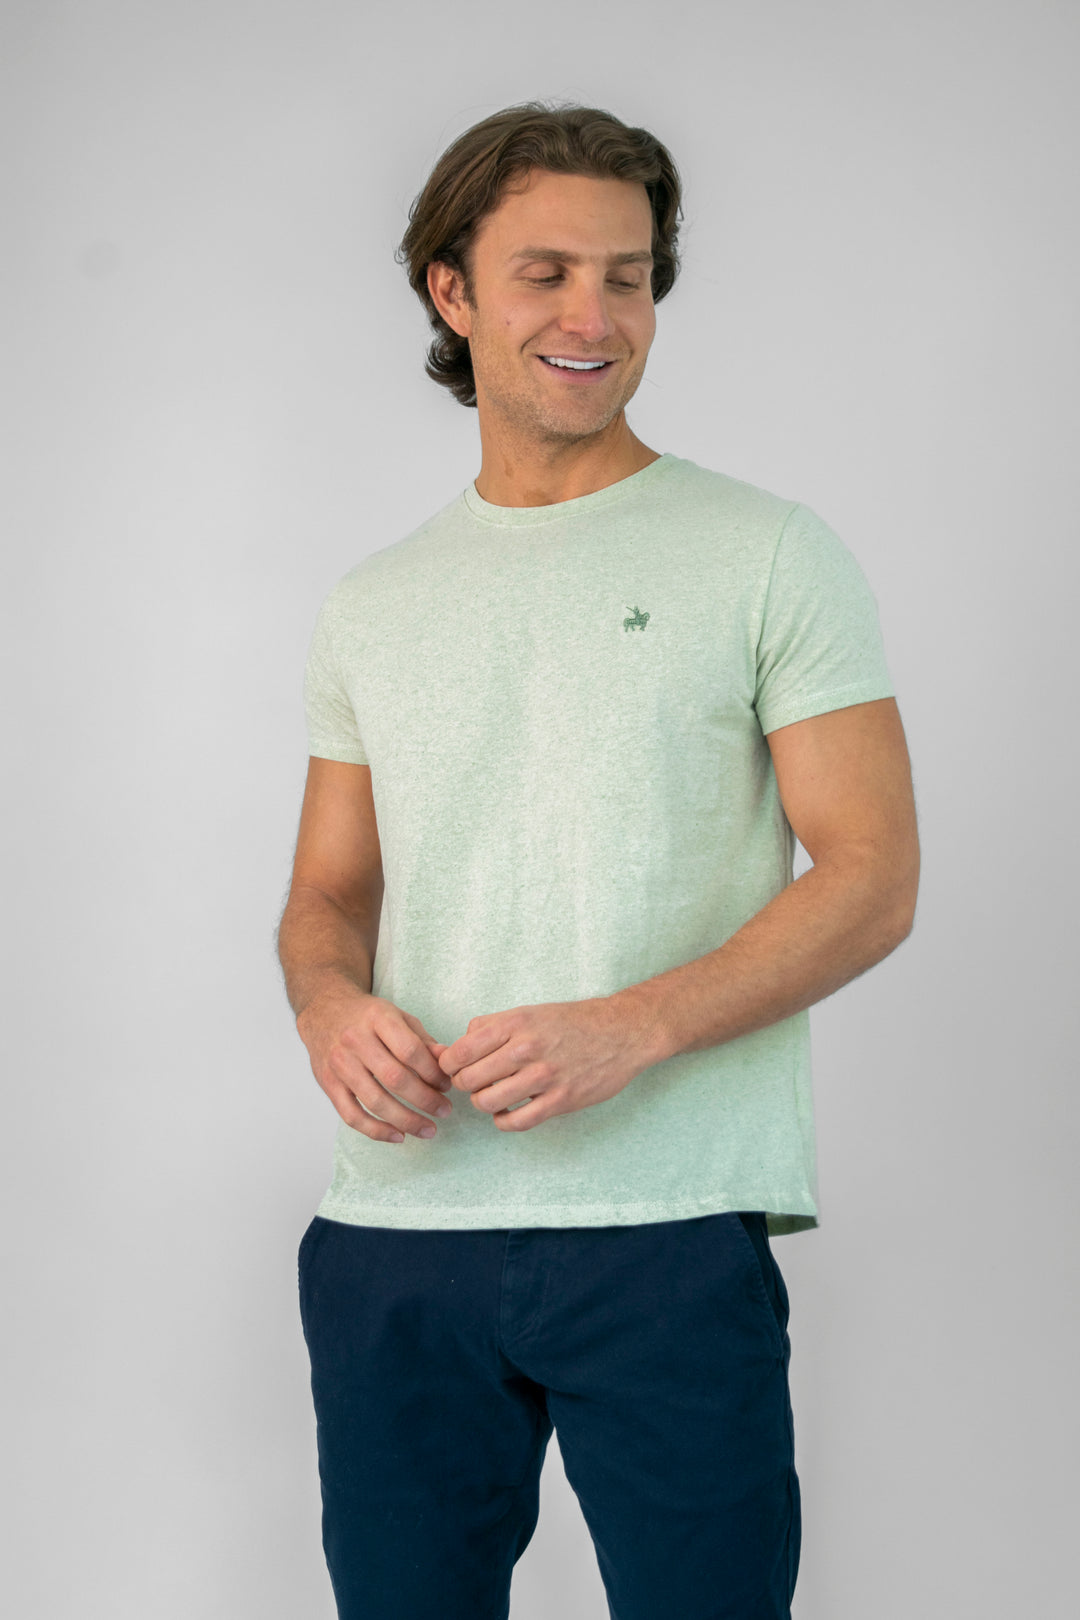 Camiseta para hombre manga corta color verde. hecha de 50% algodón orgánico y 50% algodón recuperado